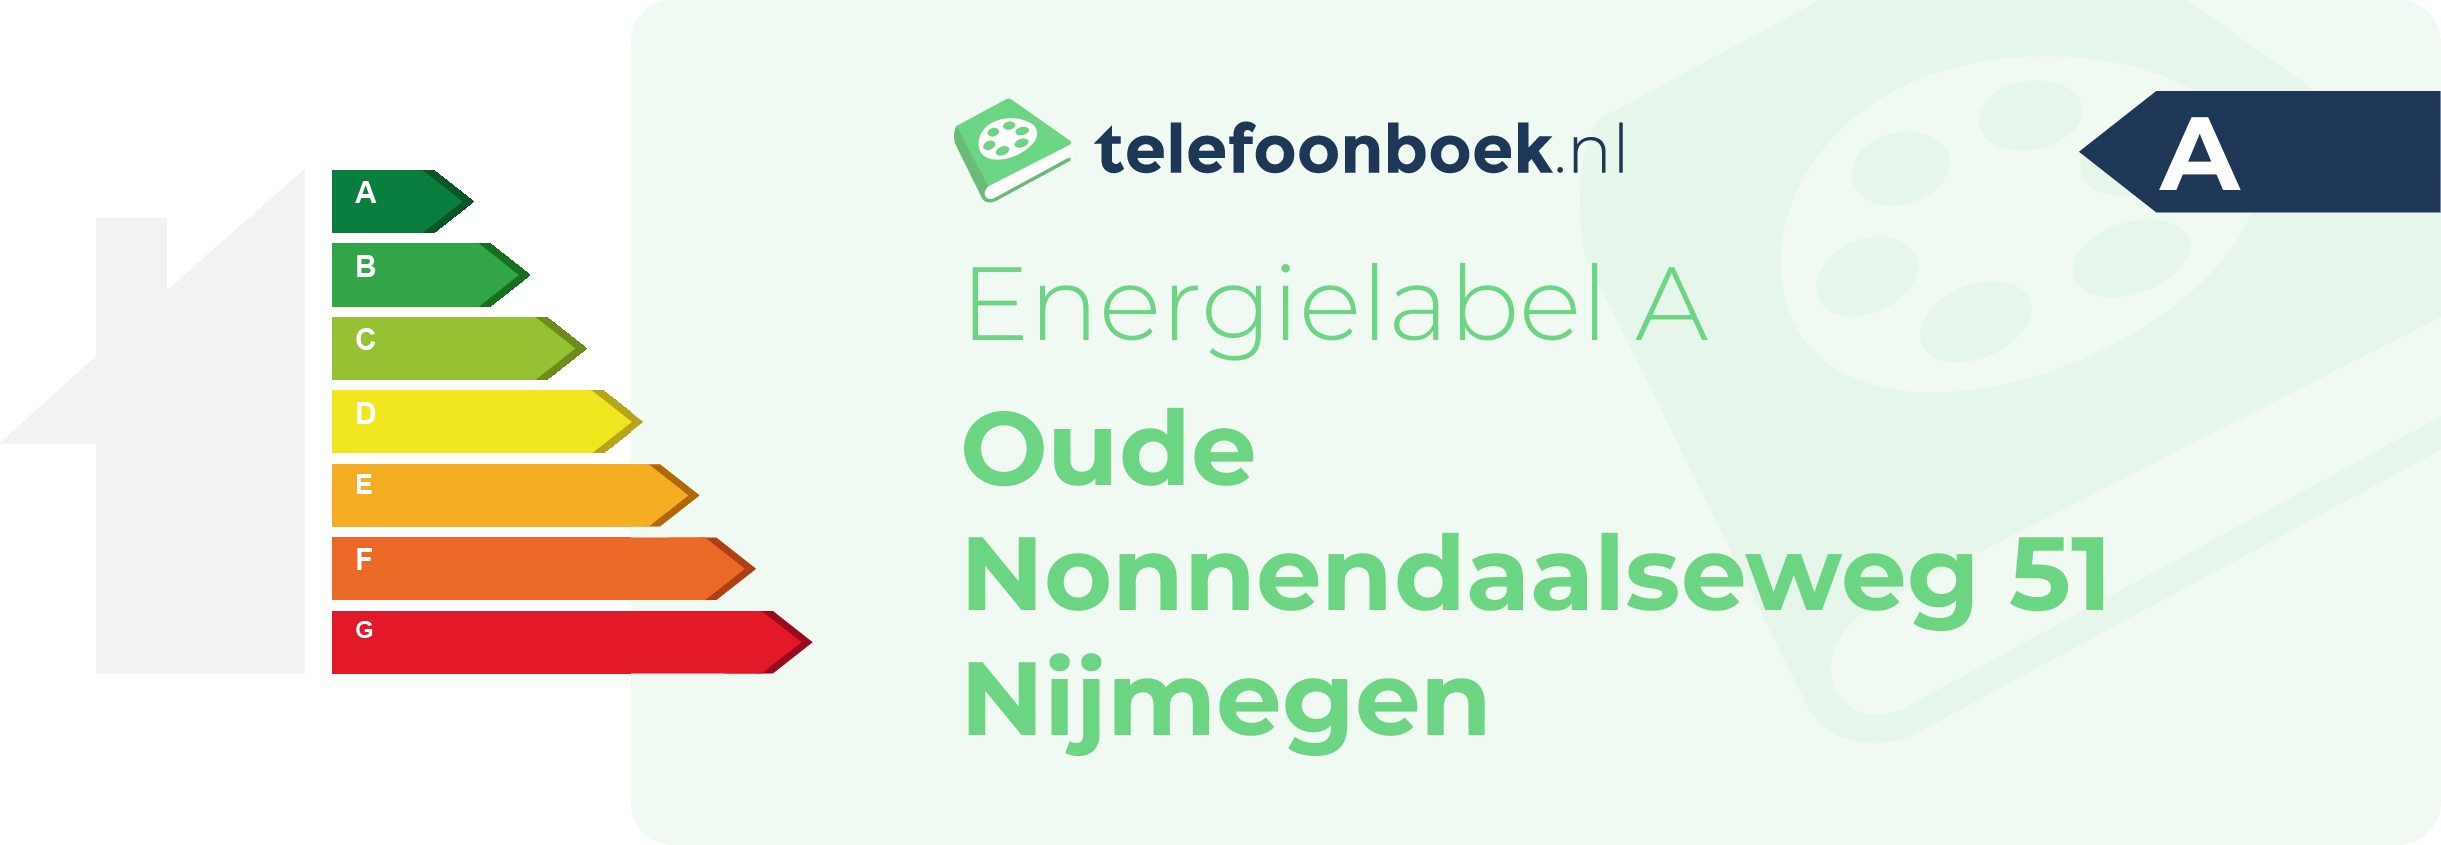 Energielabel Oude Nonnendaalseweg 51 Nijmegen